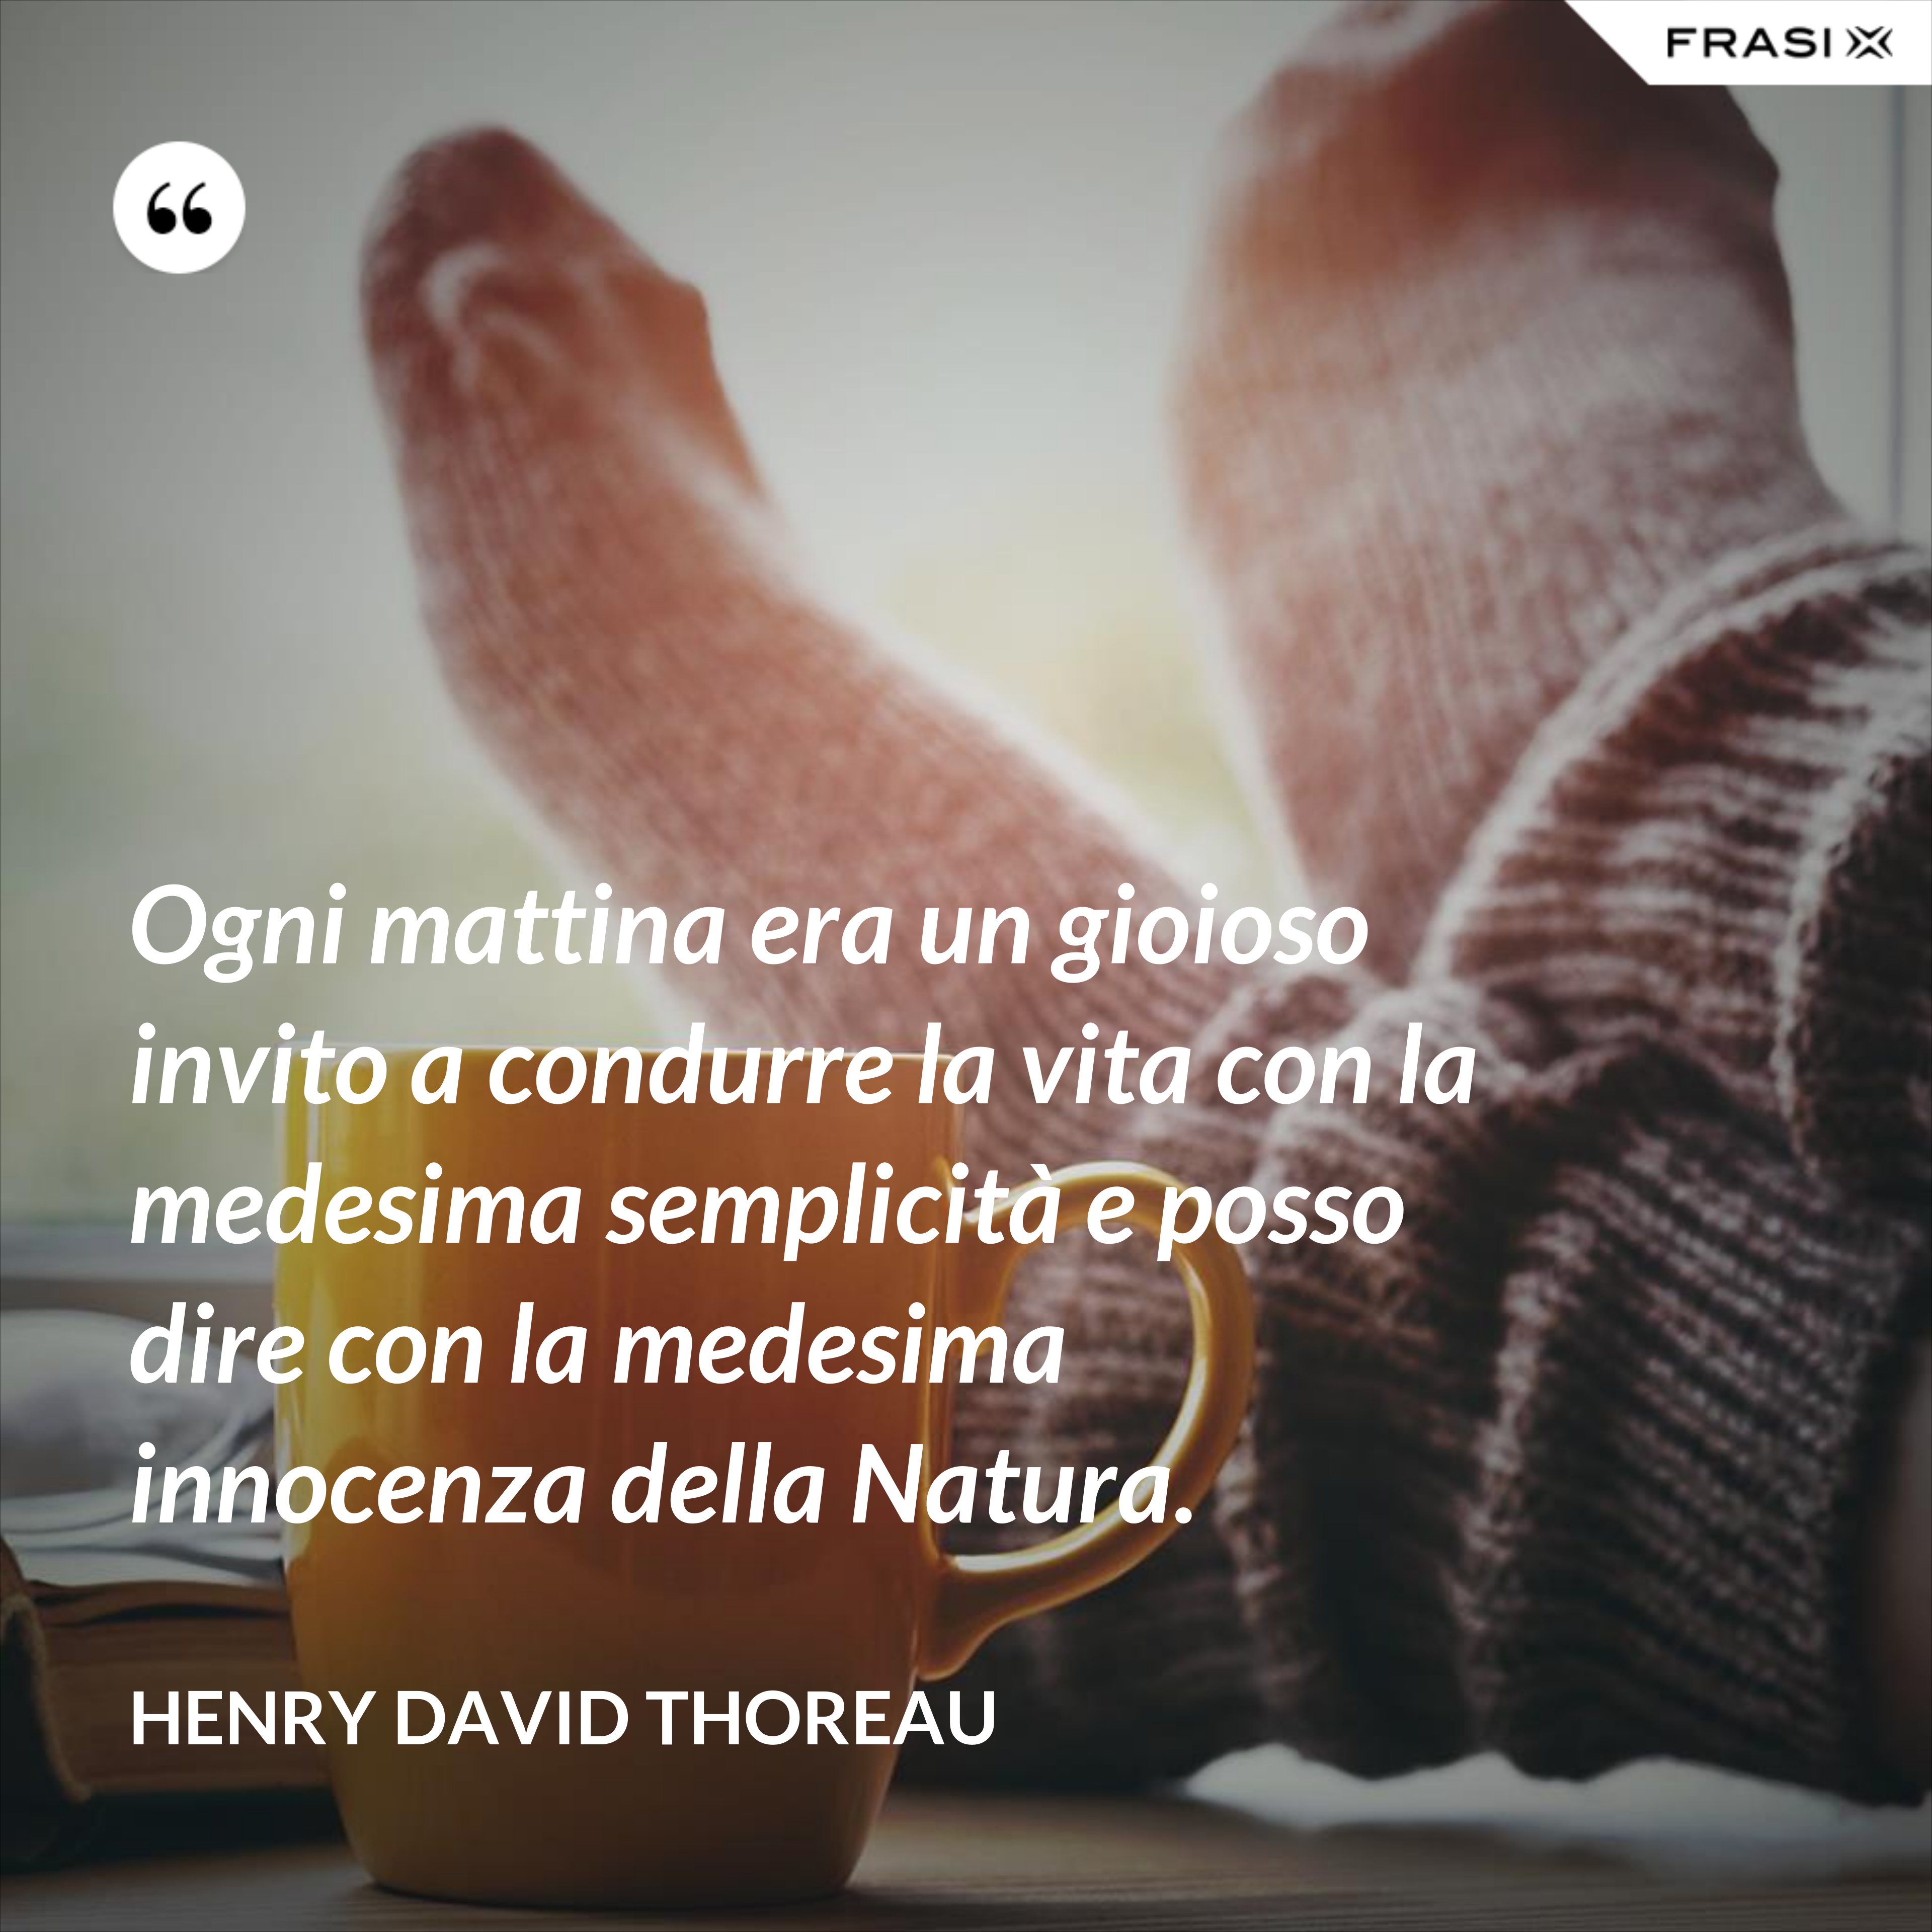 Ogni mattina era un gioioso invito a condurre la vita con la medesima semplicità e posso dire con la medesima innocenza della Natura. - Henry David Thoreau